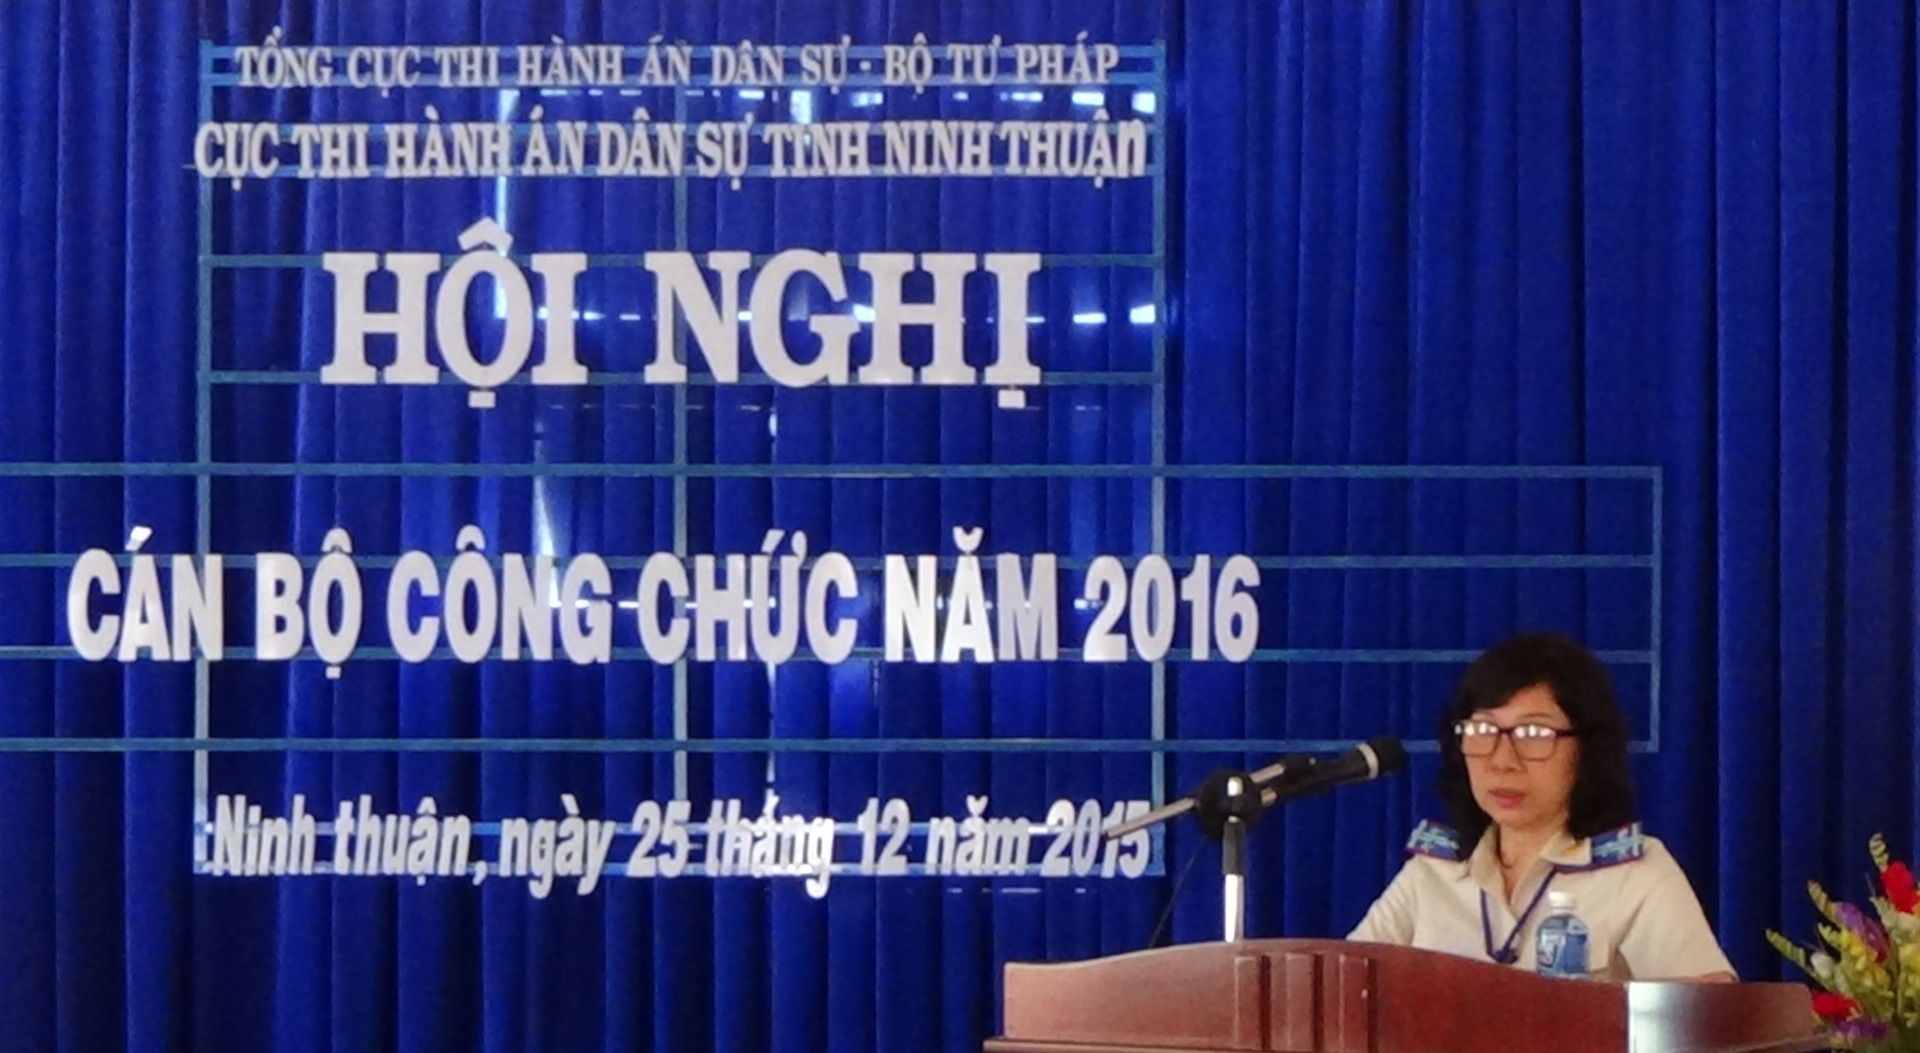 Cục Thi hành án dân sự tỉnh Ninh Thuận tổ chức Hội nghị Cán bộ công chức năm 2016